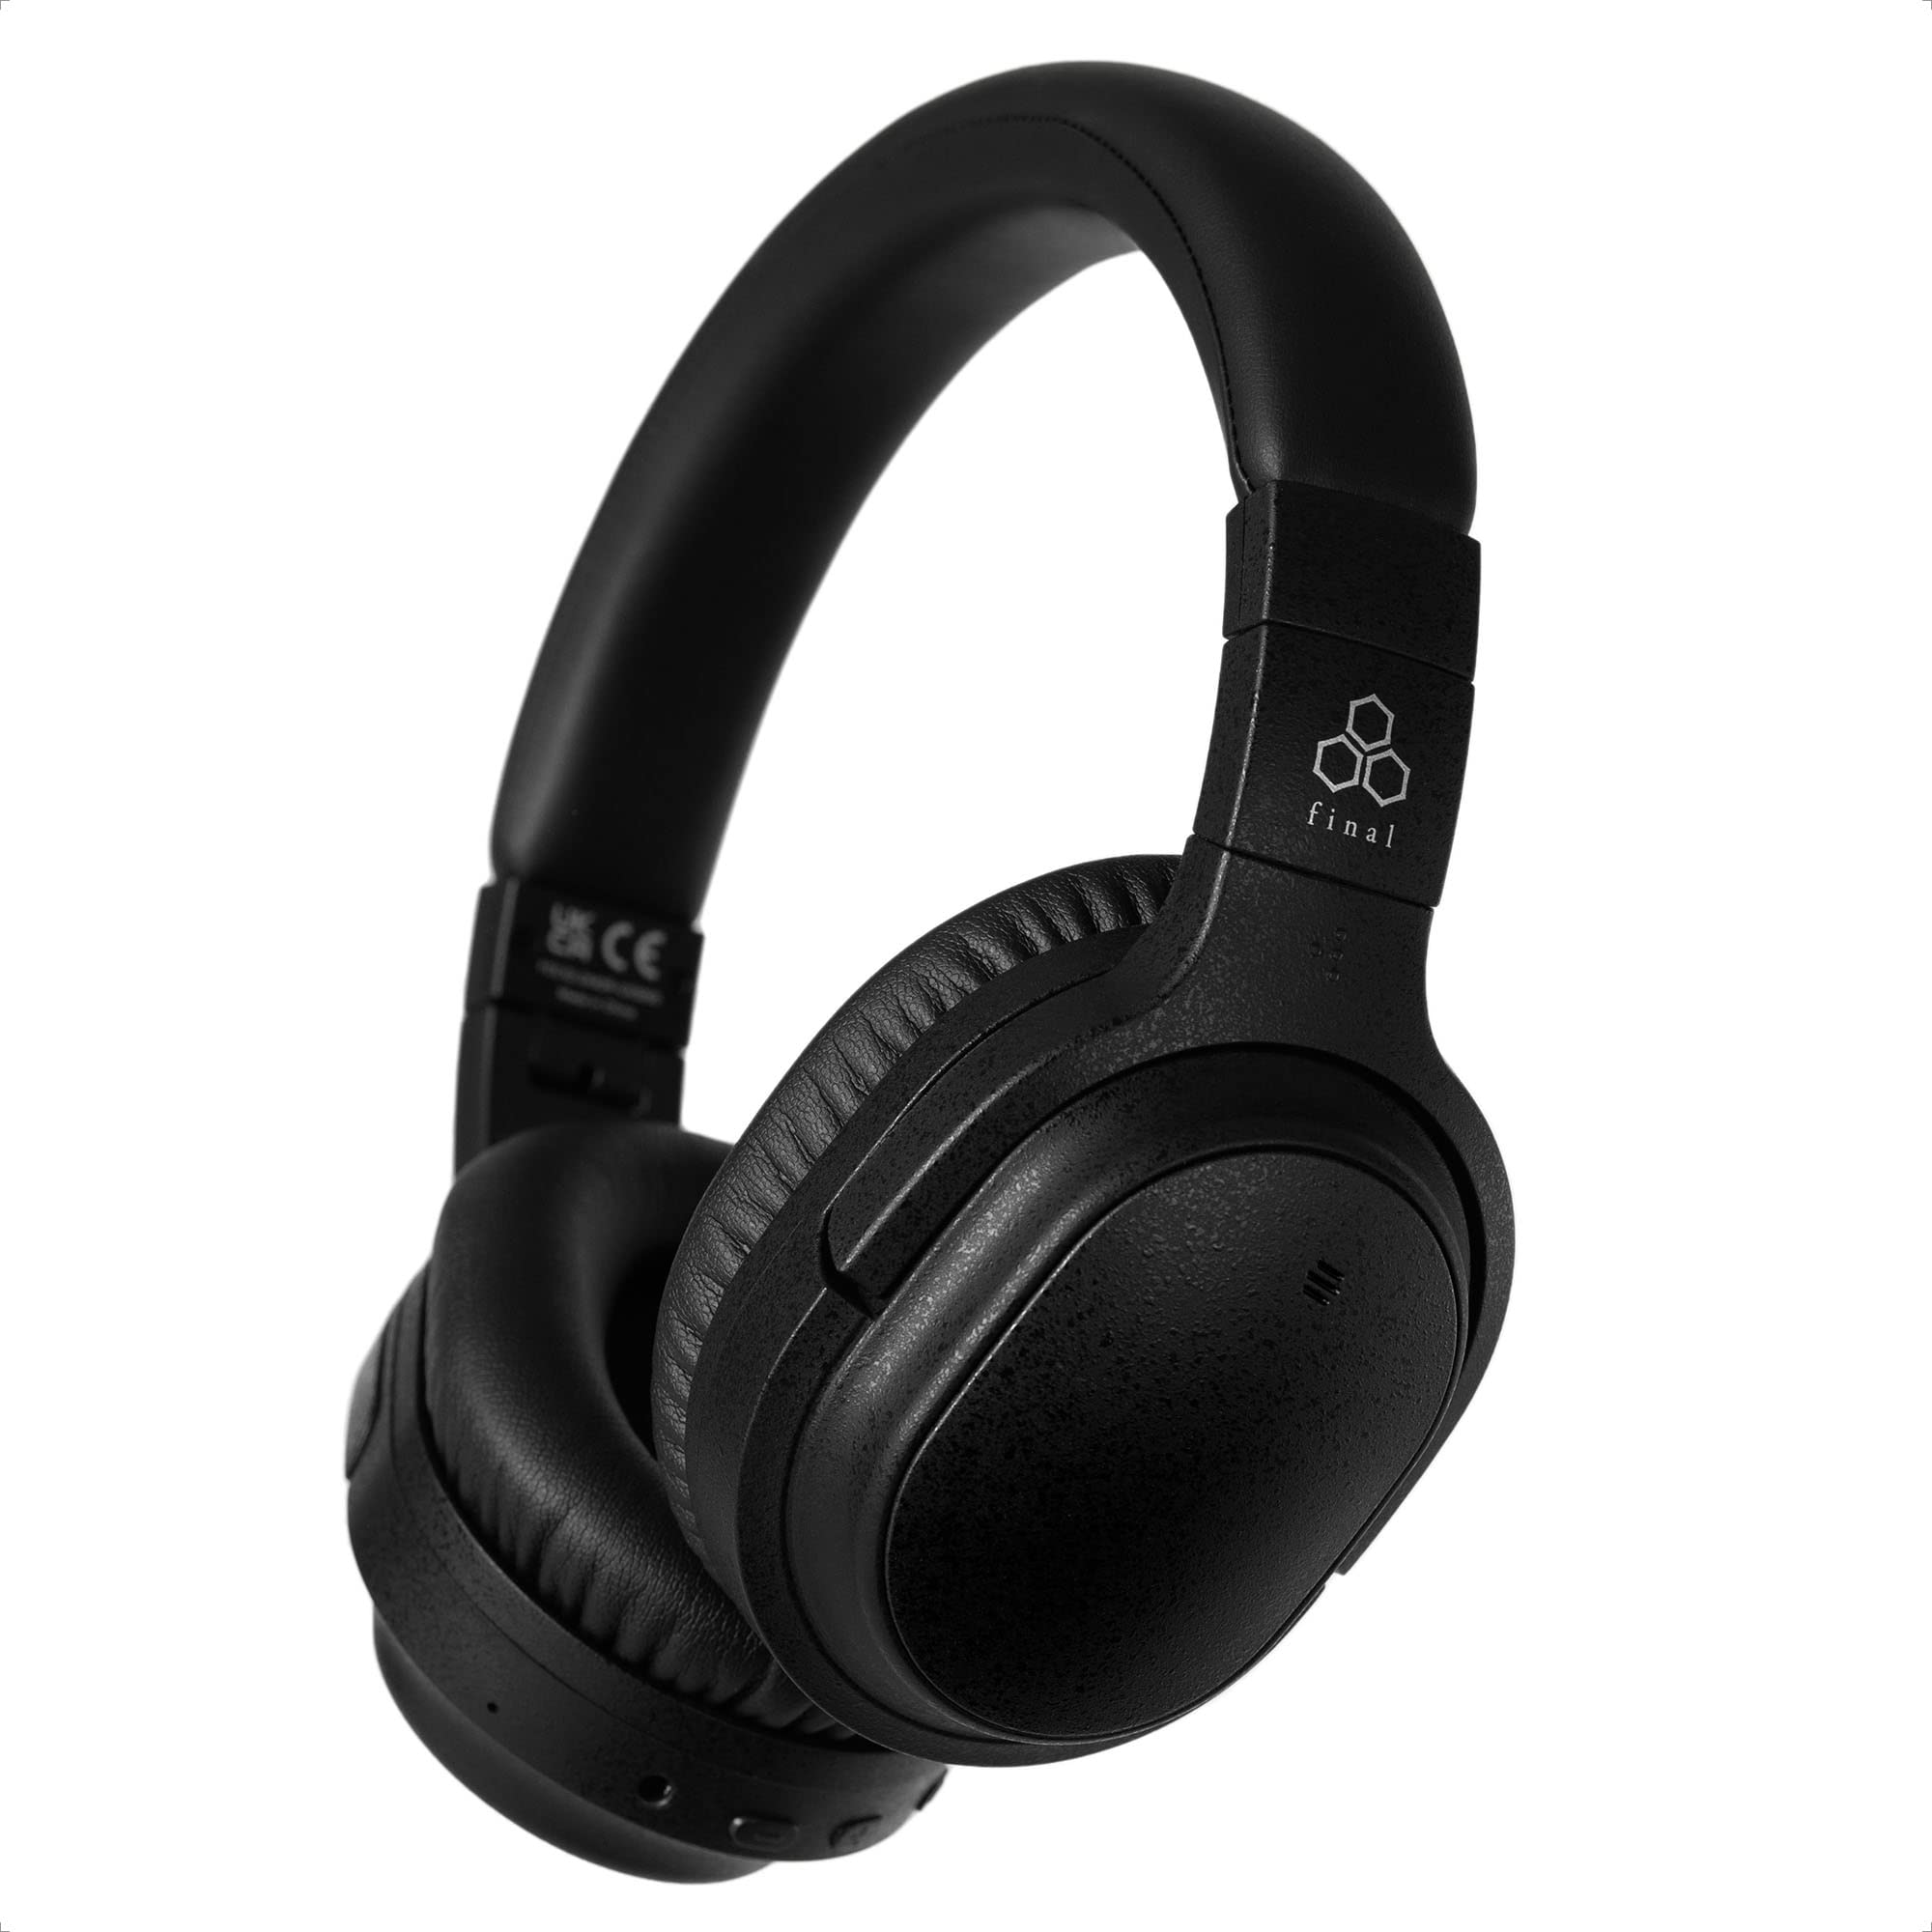 Final Fones de ouvido sem fio UX3000 com cancelamento de ruído ativo